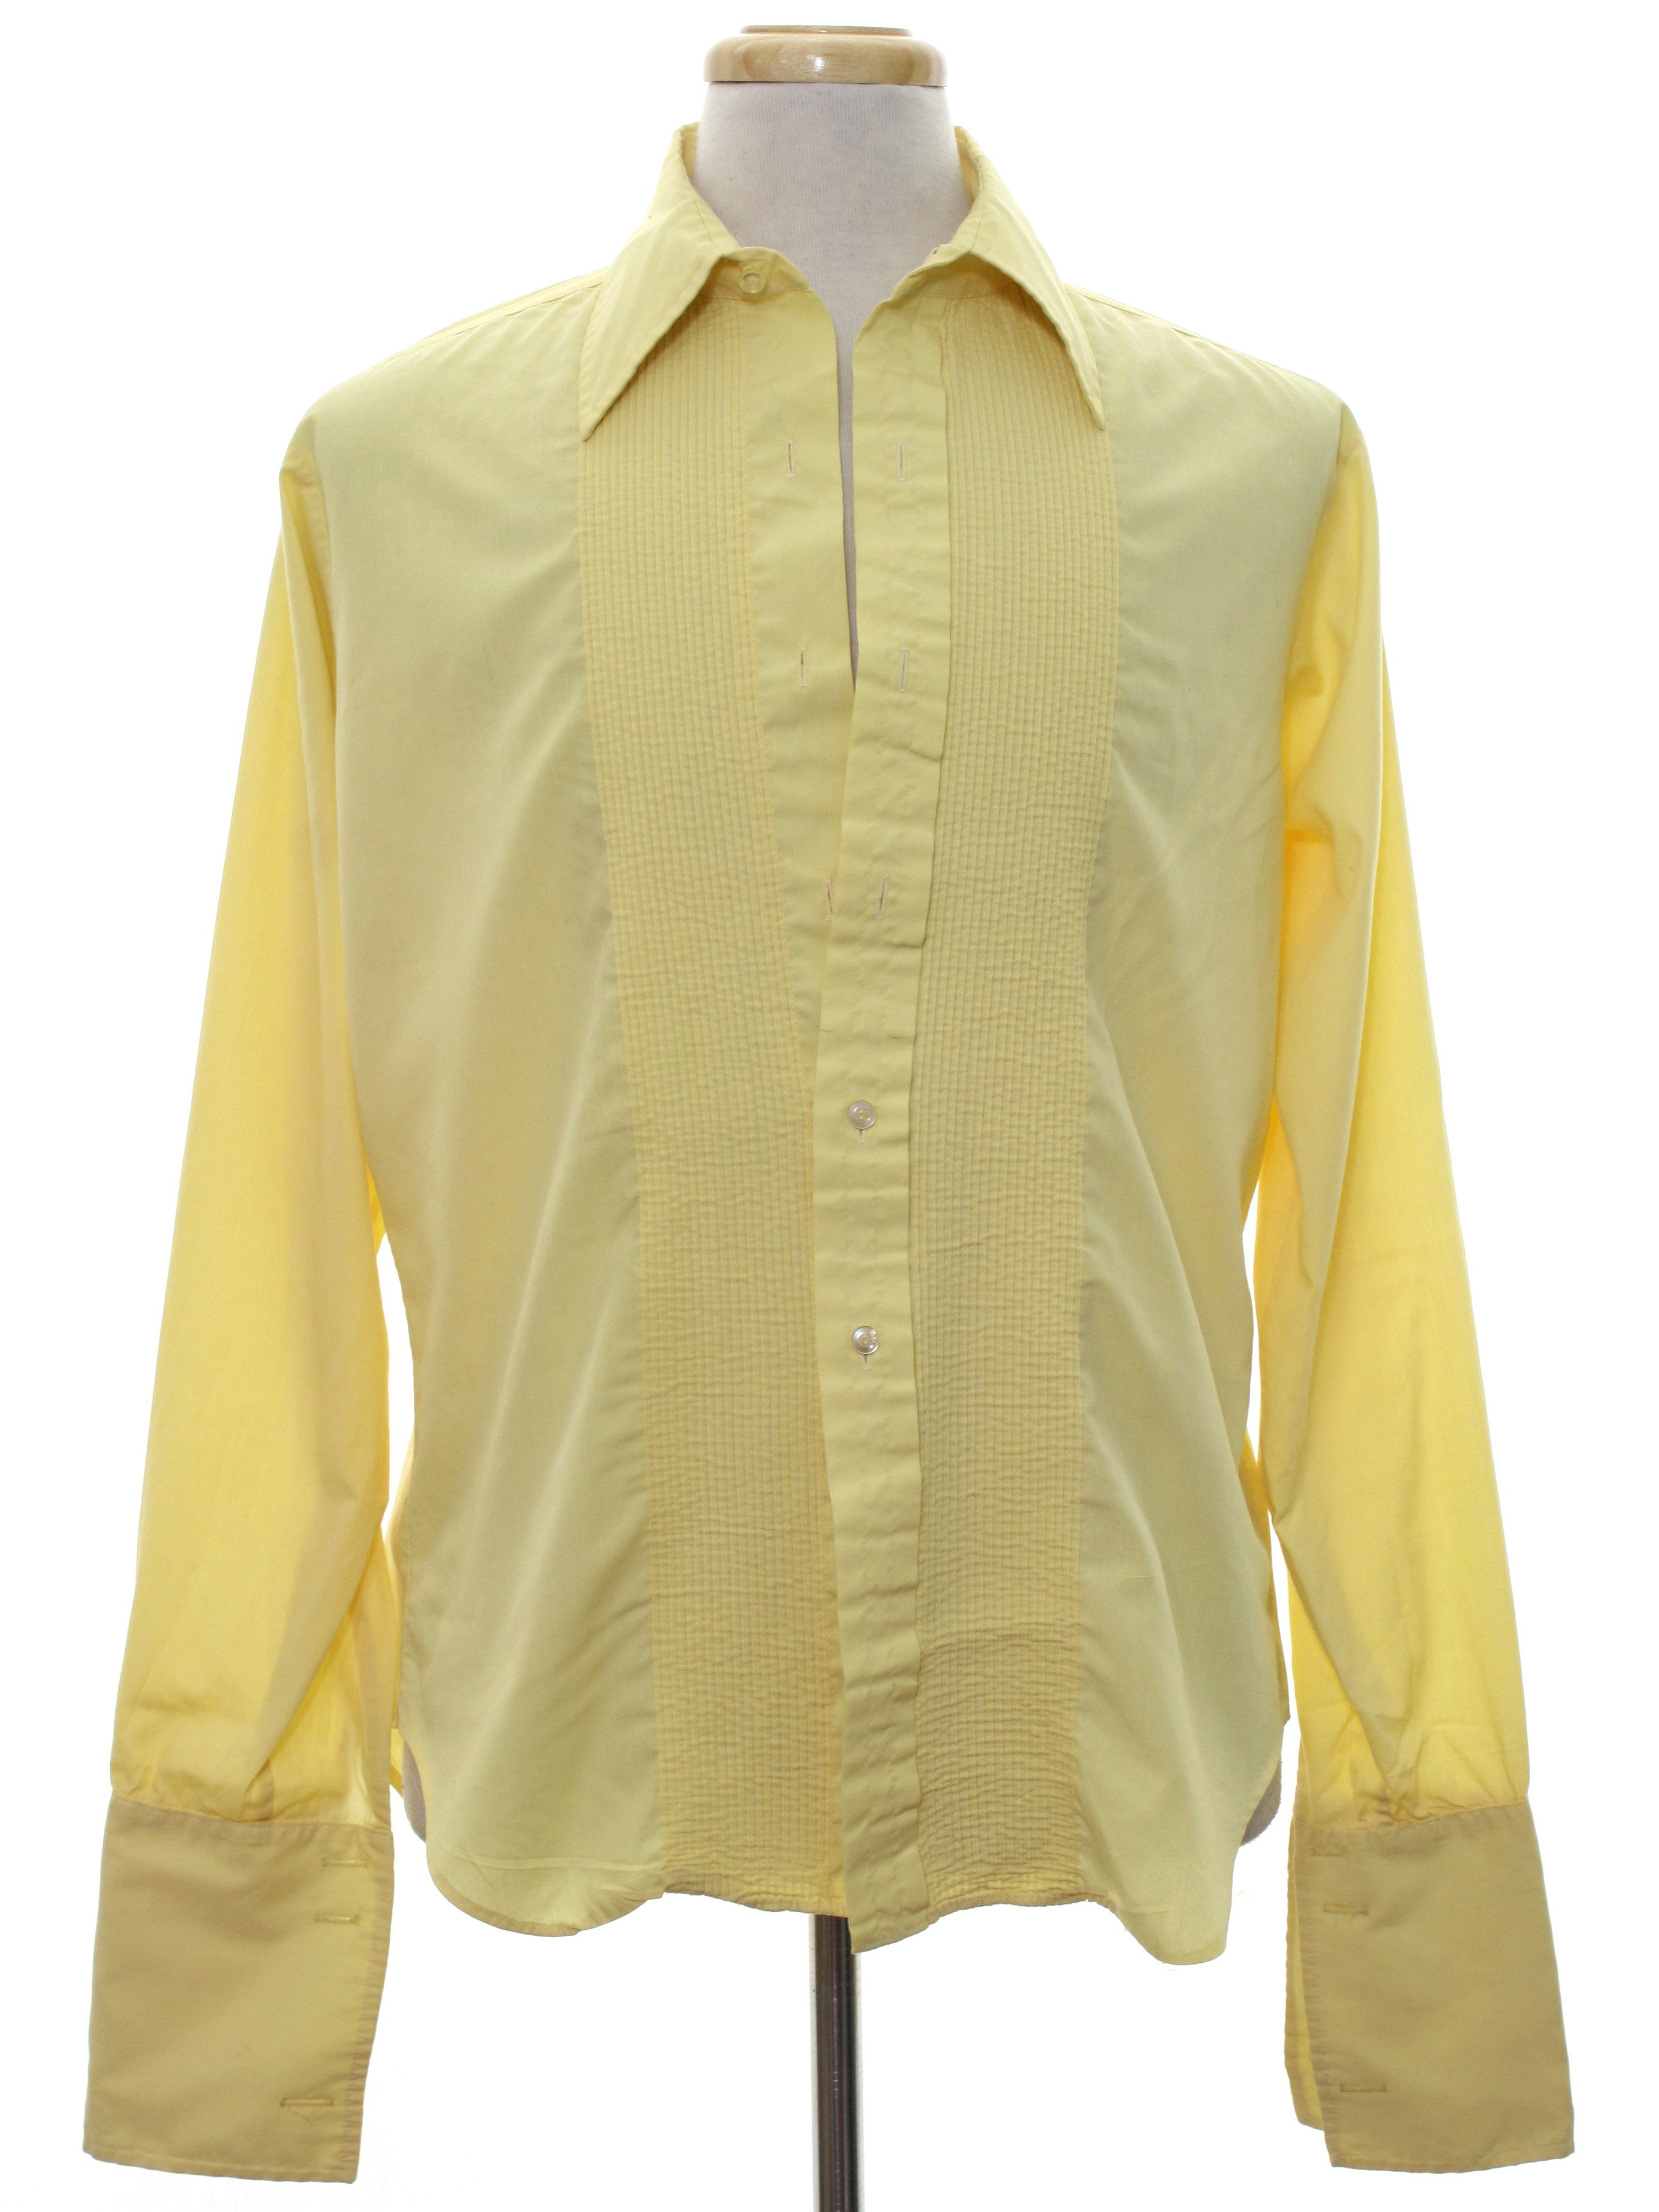 L & M Fashions Seventies Vintage Shirt: 70s -L & M Fashions- Mens pale ...